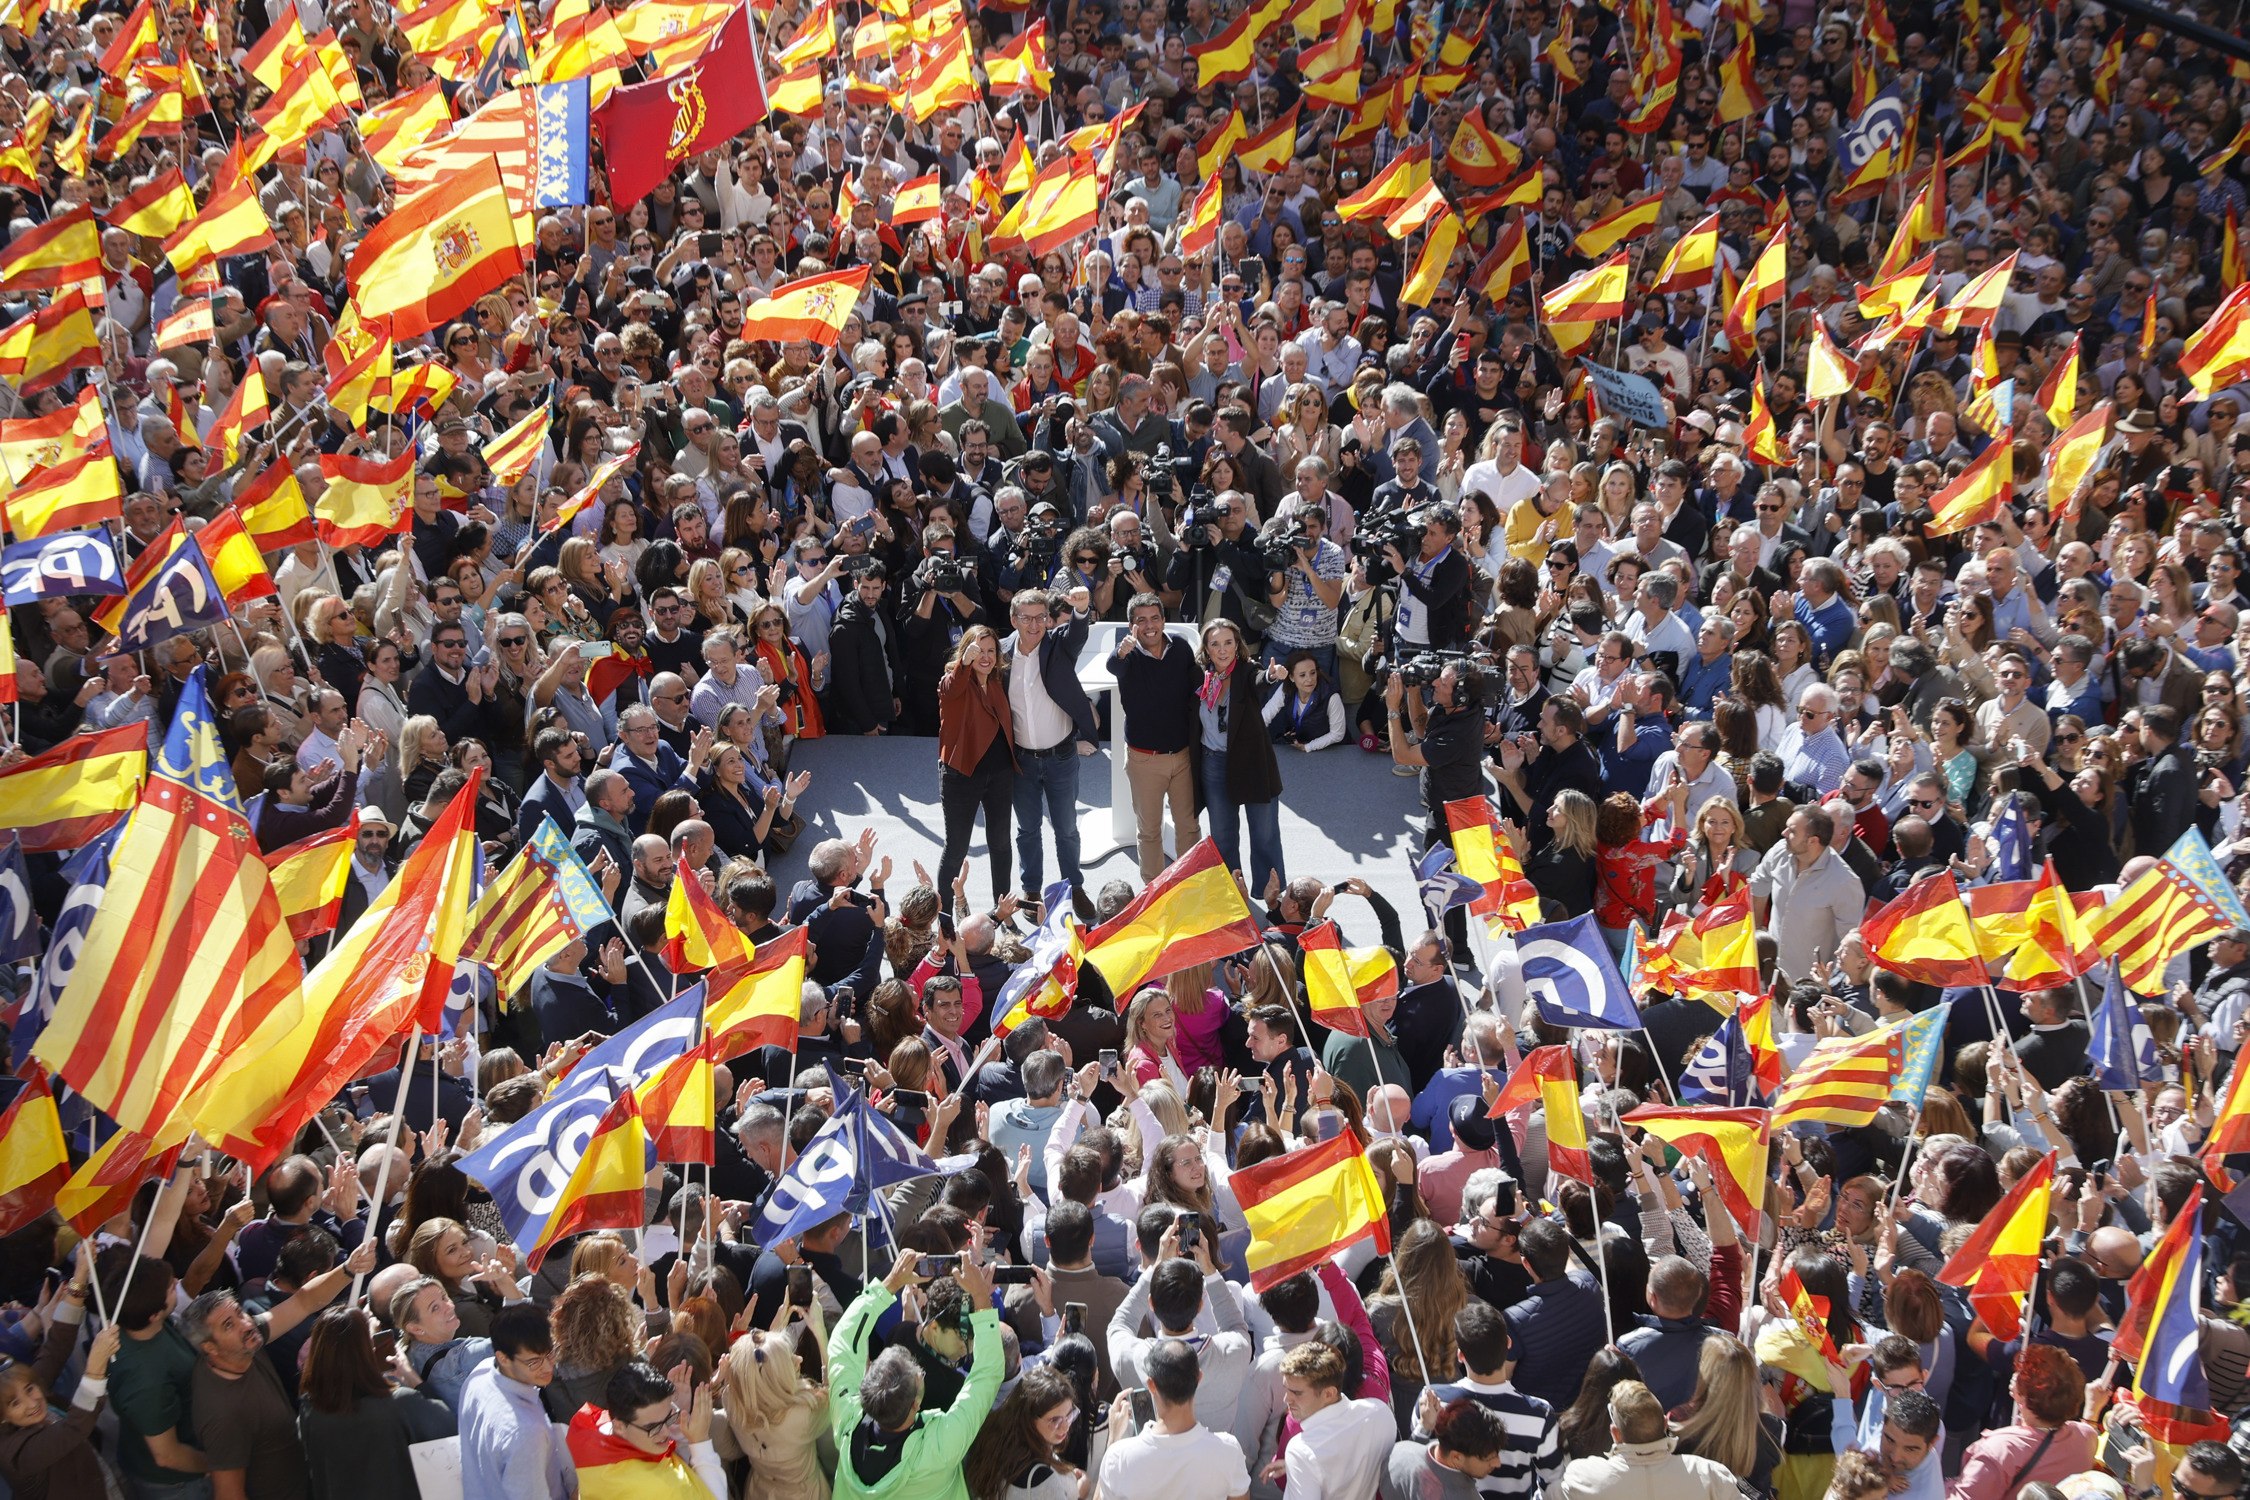 Feijóo toca a rebato contra la amnistía y alerta de que "defenderá España" desde las instituciones